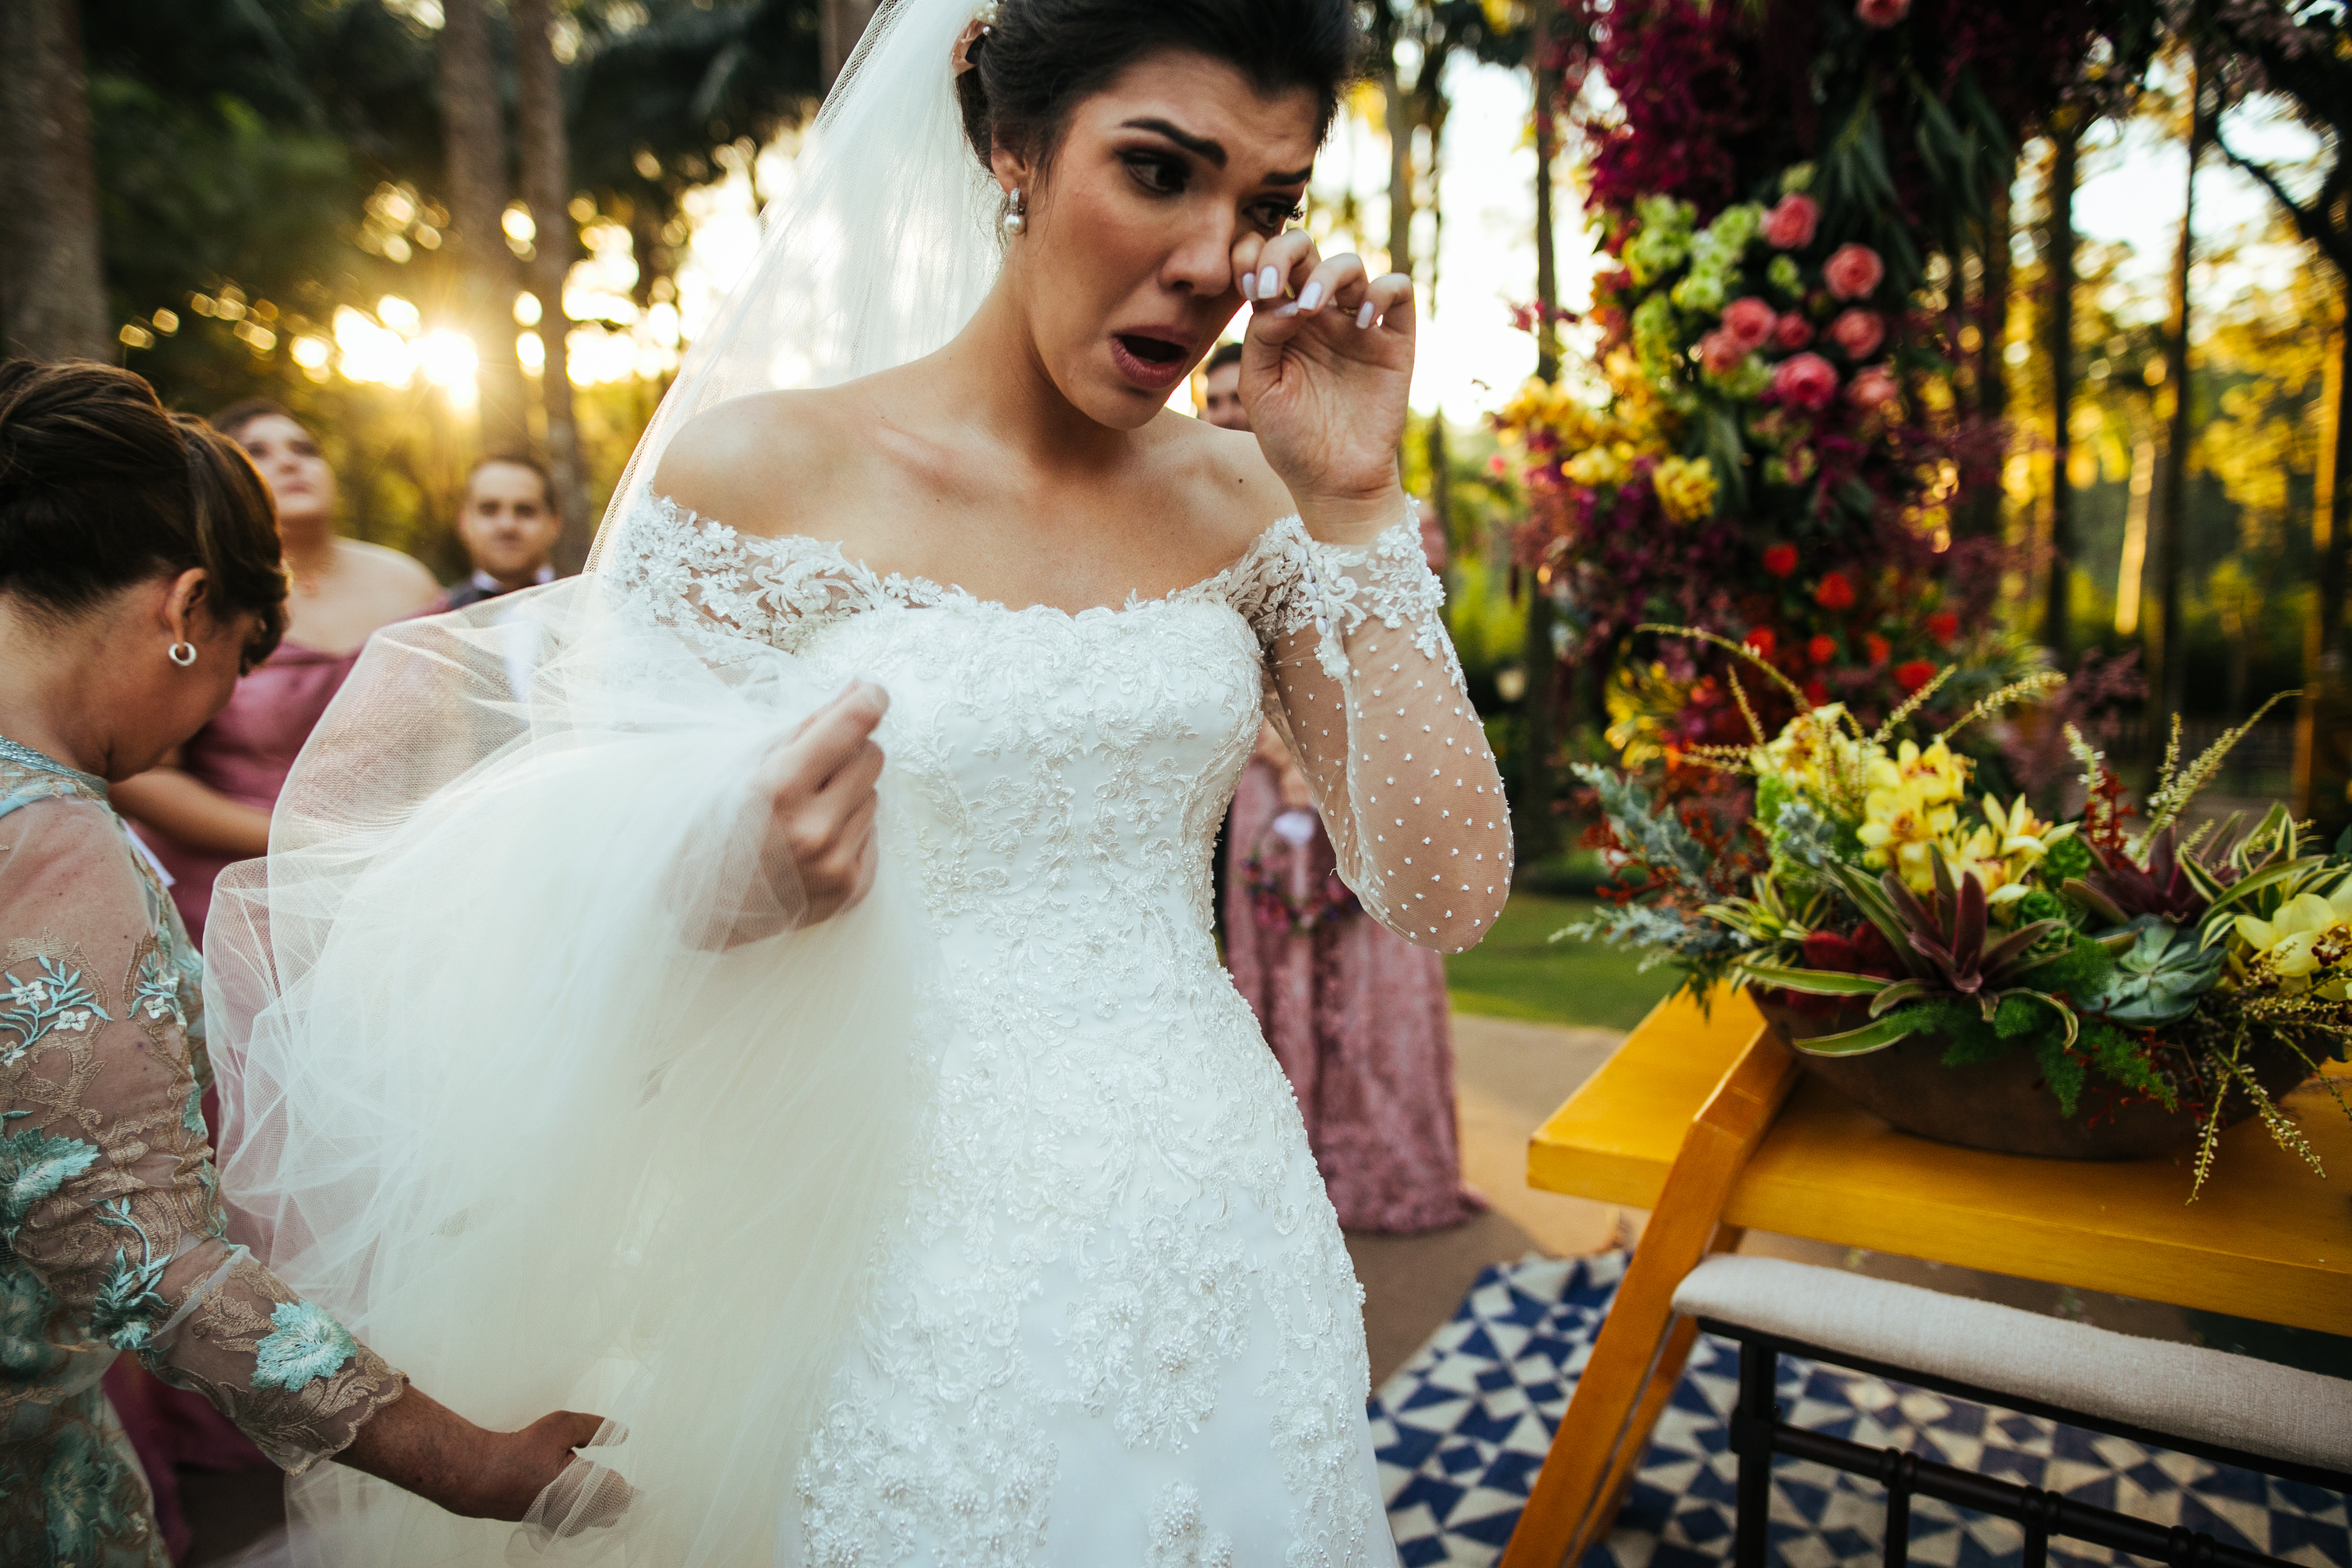 Una novia llorando en el altar | Foto: Getty Images